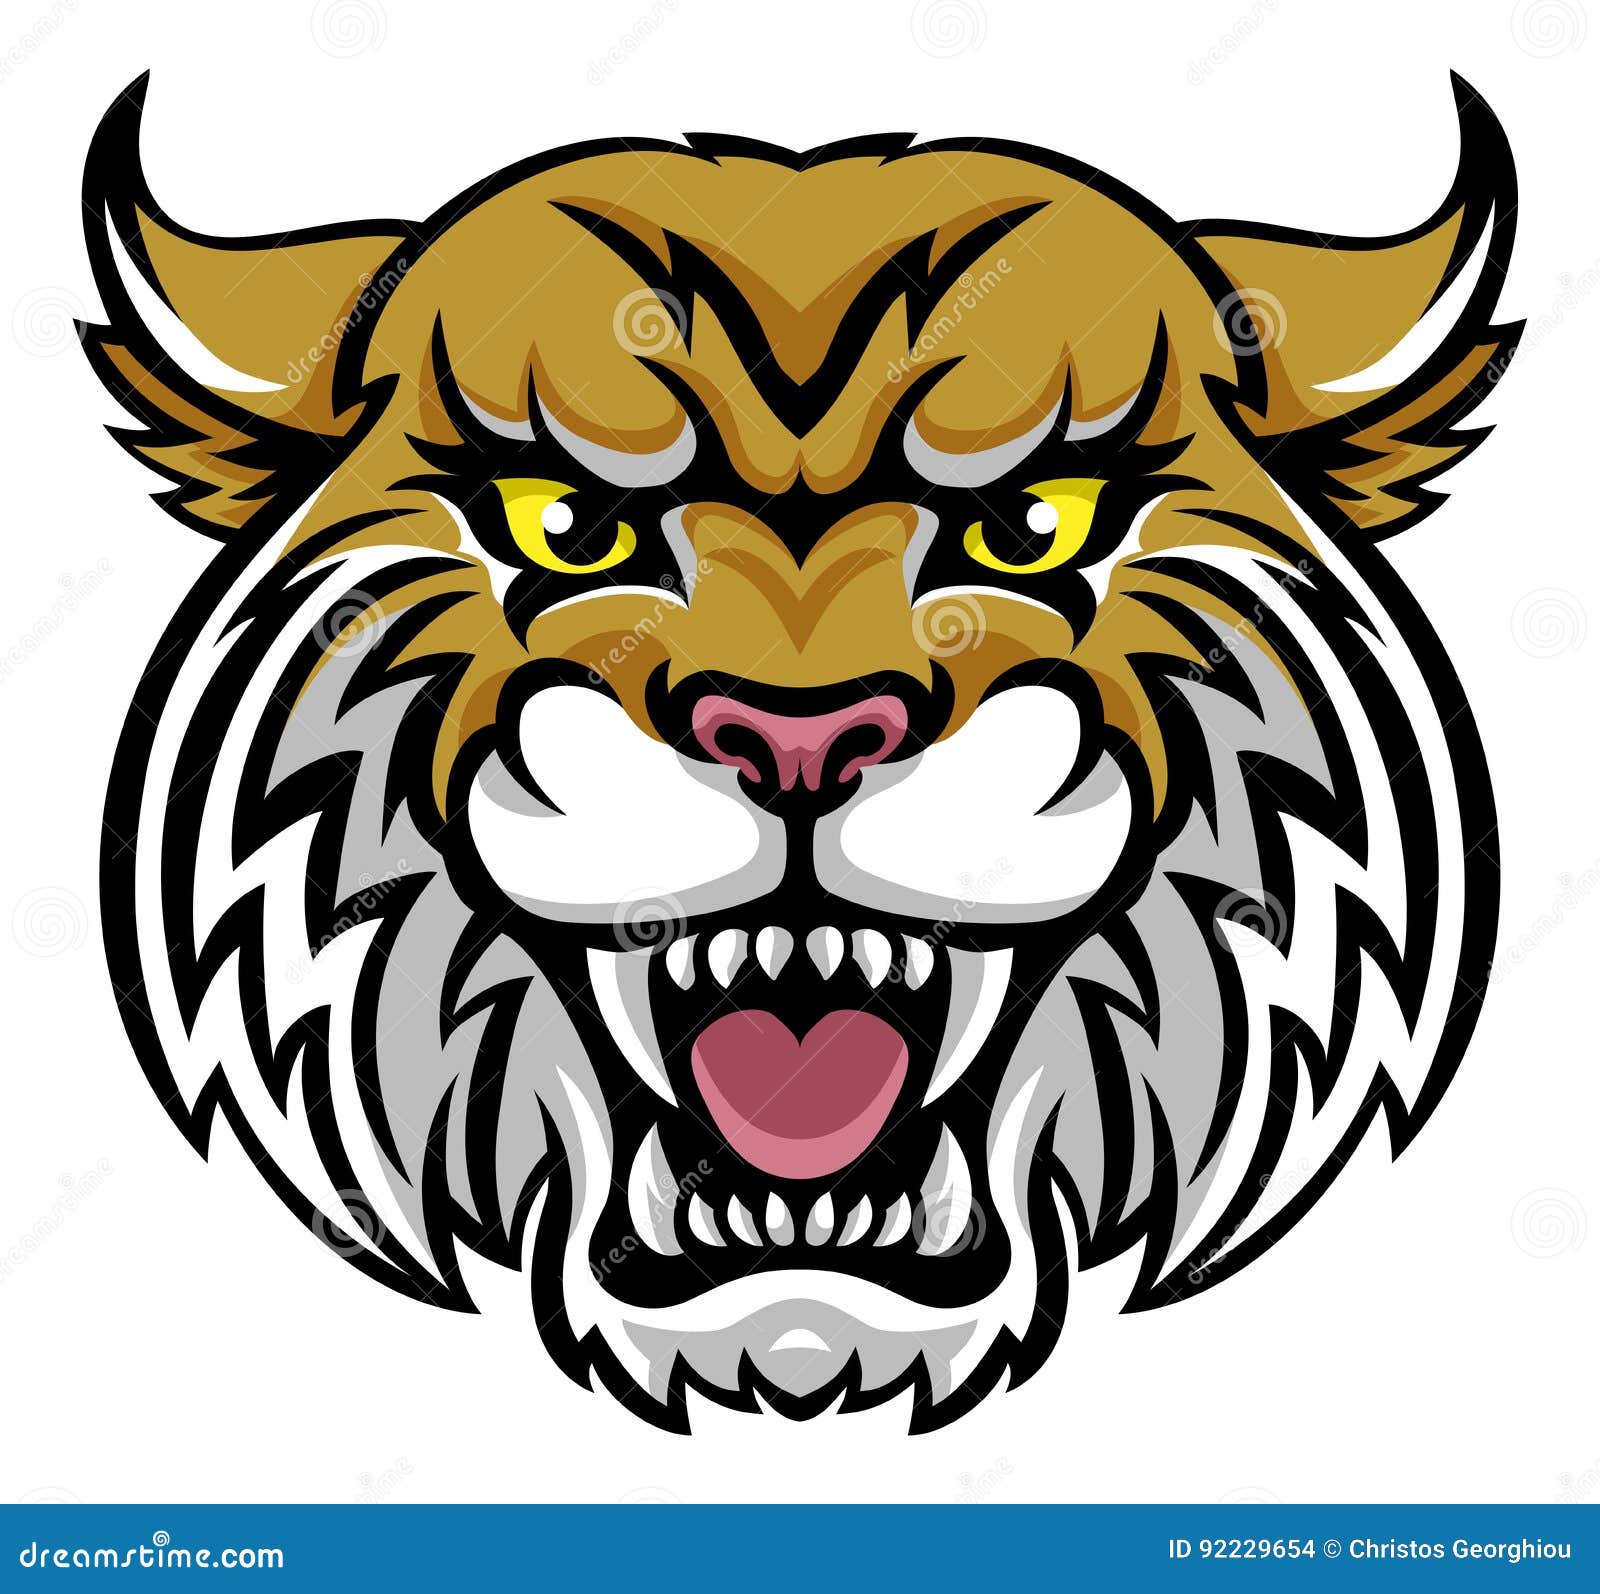 wildcat bobcat mascot